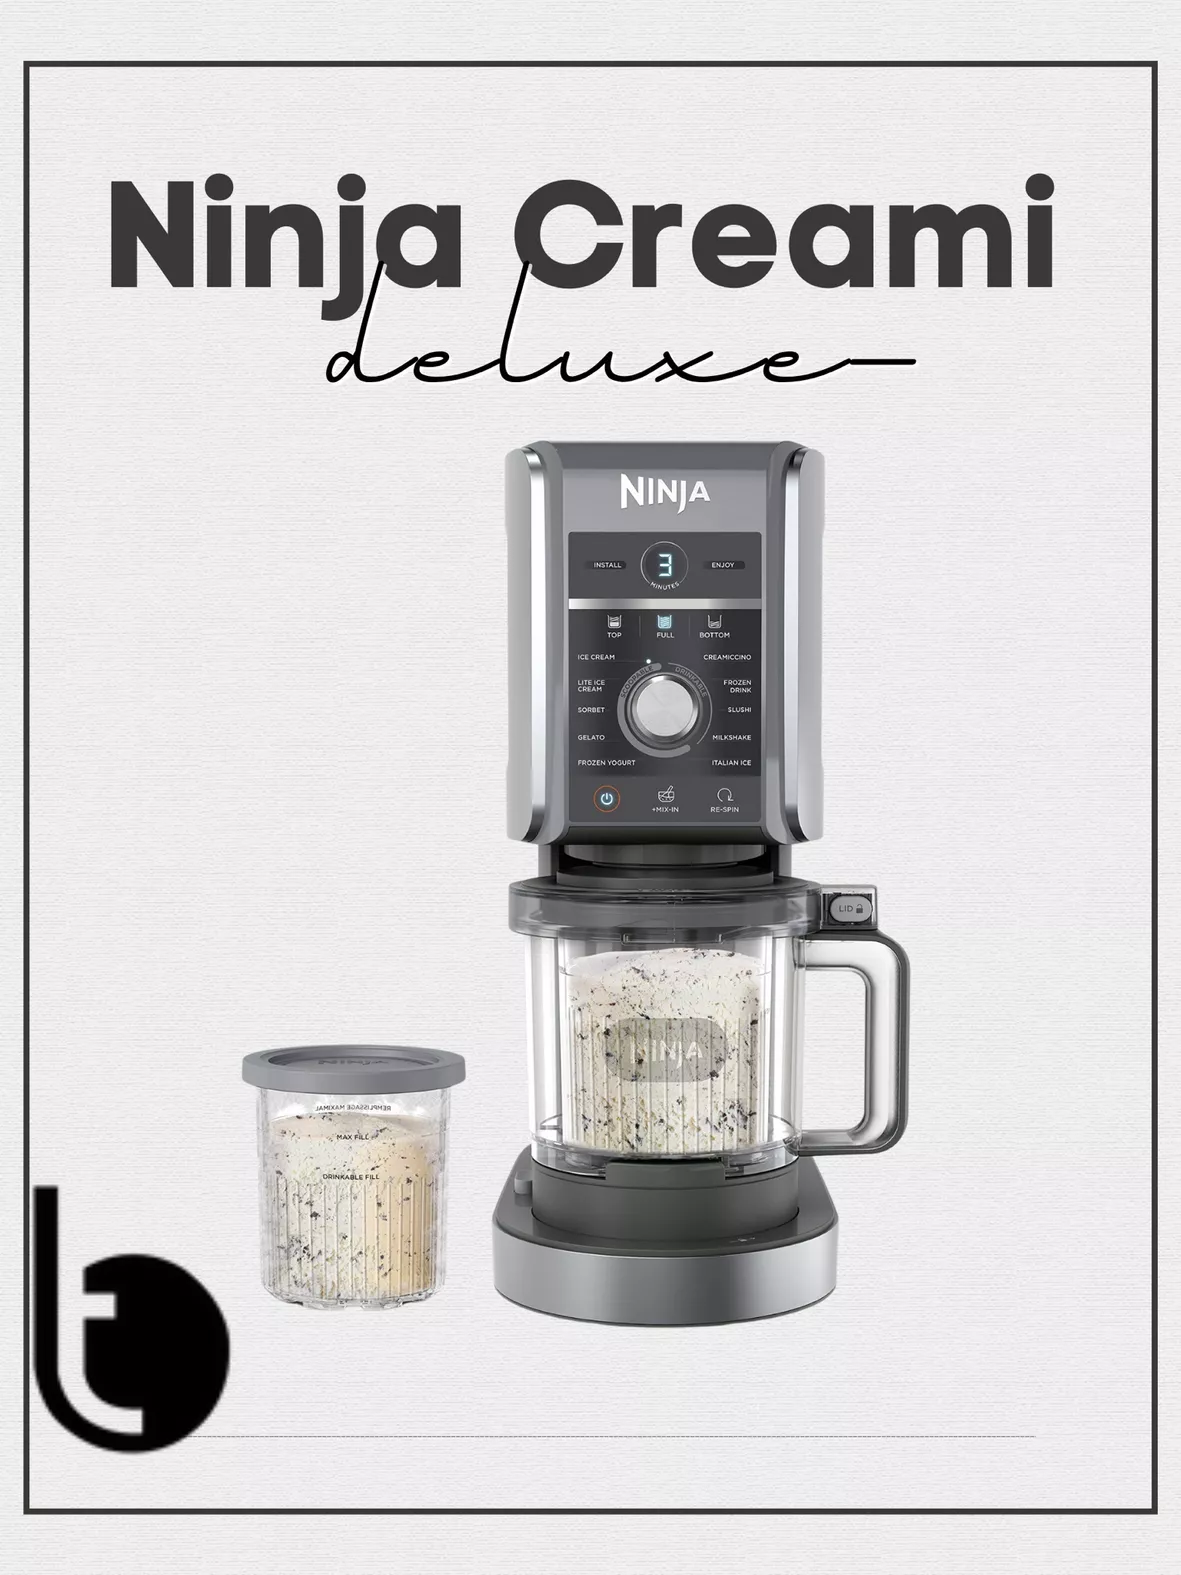  Ninja NC501 CREAMi Deluxe 11-in-1 Ice Cream & Frozen